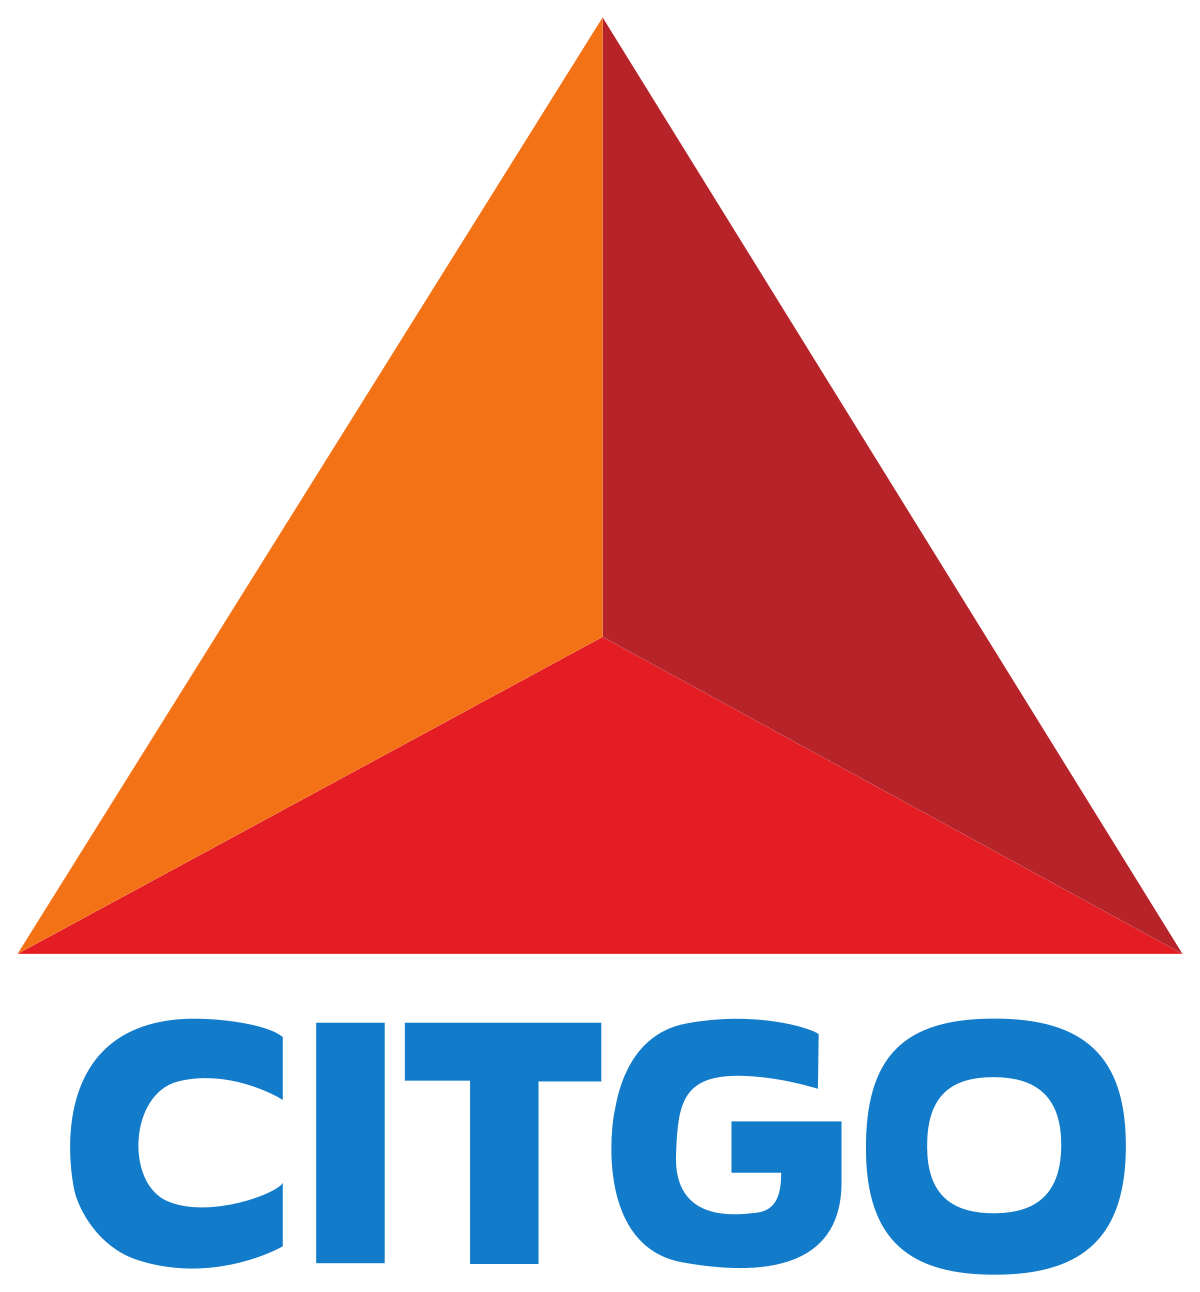 Red Gas Station Logo - Citgo